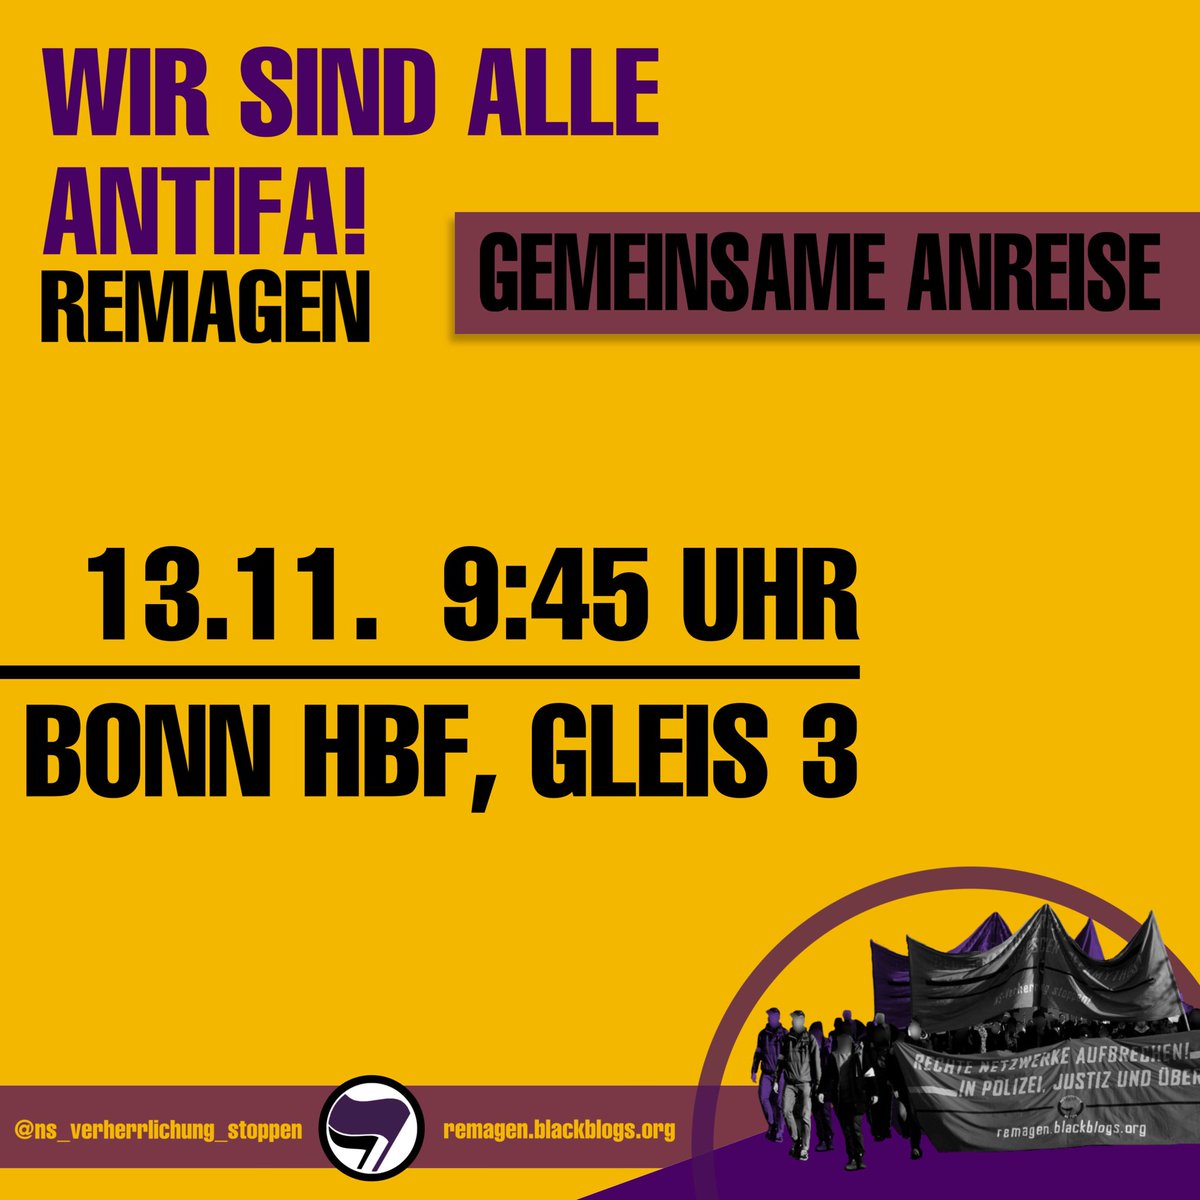 Wir fahren am Samstag alle gemeinsam nach Remagen! Kommt um 9:45 Uhr auf Gleis 3 am Bonner HBF! Mehr Infos gitb es bei @NS_stoppen #rmg1311 #remagen #nsverherrlichungstoppen #remagennazifrei